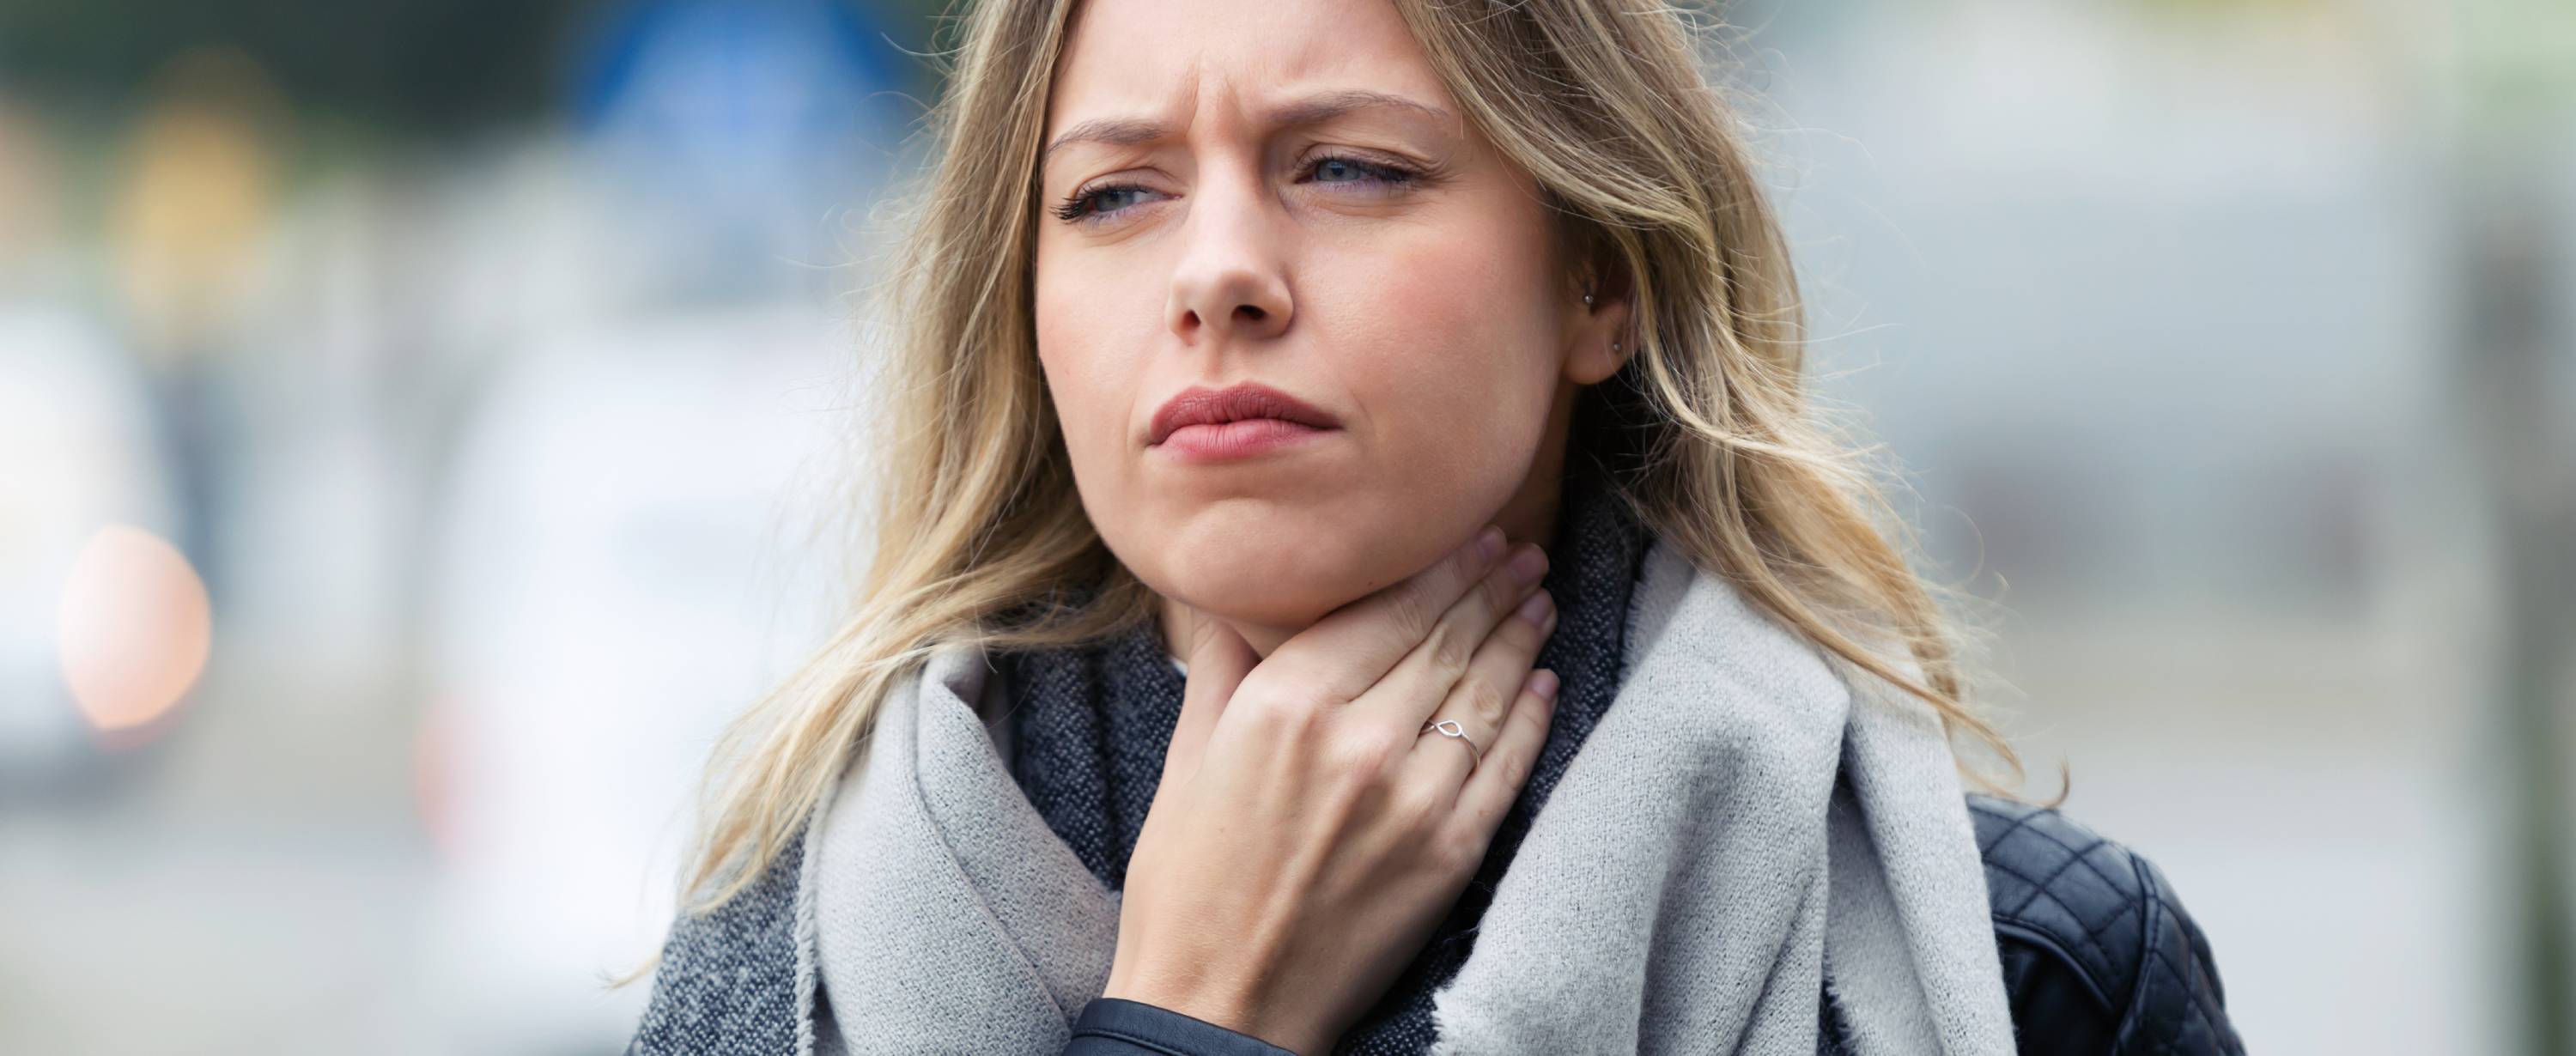 En kvinne med plaget ansiktsuttrykk holder en hånd rundt halsen – kanskje er hun plaget av slim, kløe eller irritasjon i halsen som følge av allergi?